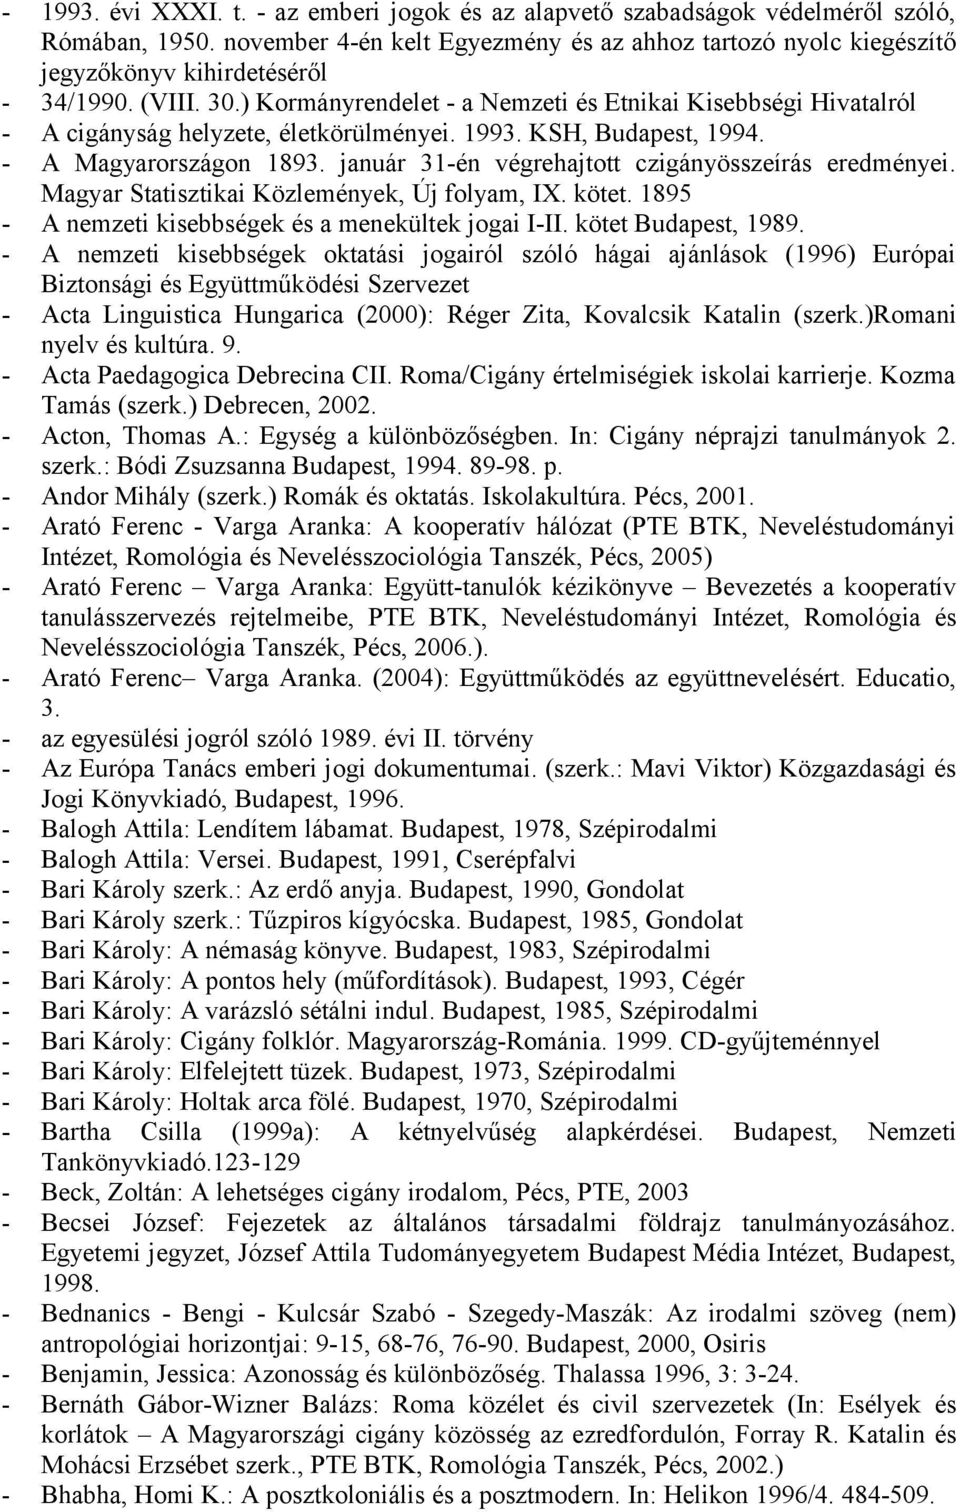 ) Kormányrendelet - a Nemzeti és Etnikai Kisebbségi Hivatalról - A cigányság helyzete, életkörülményei. 1993. KSH, Budapest, 1994. - A Magyarországon 1893.